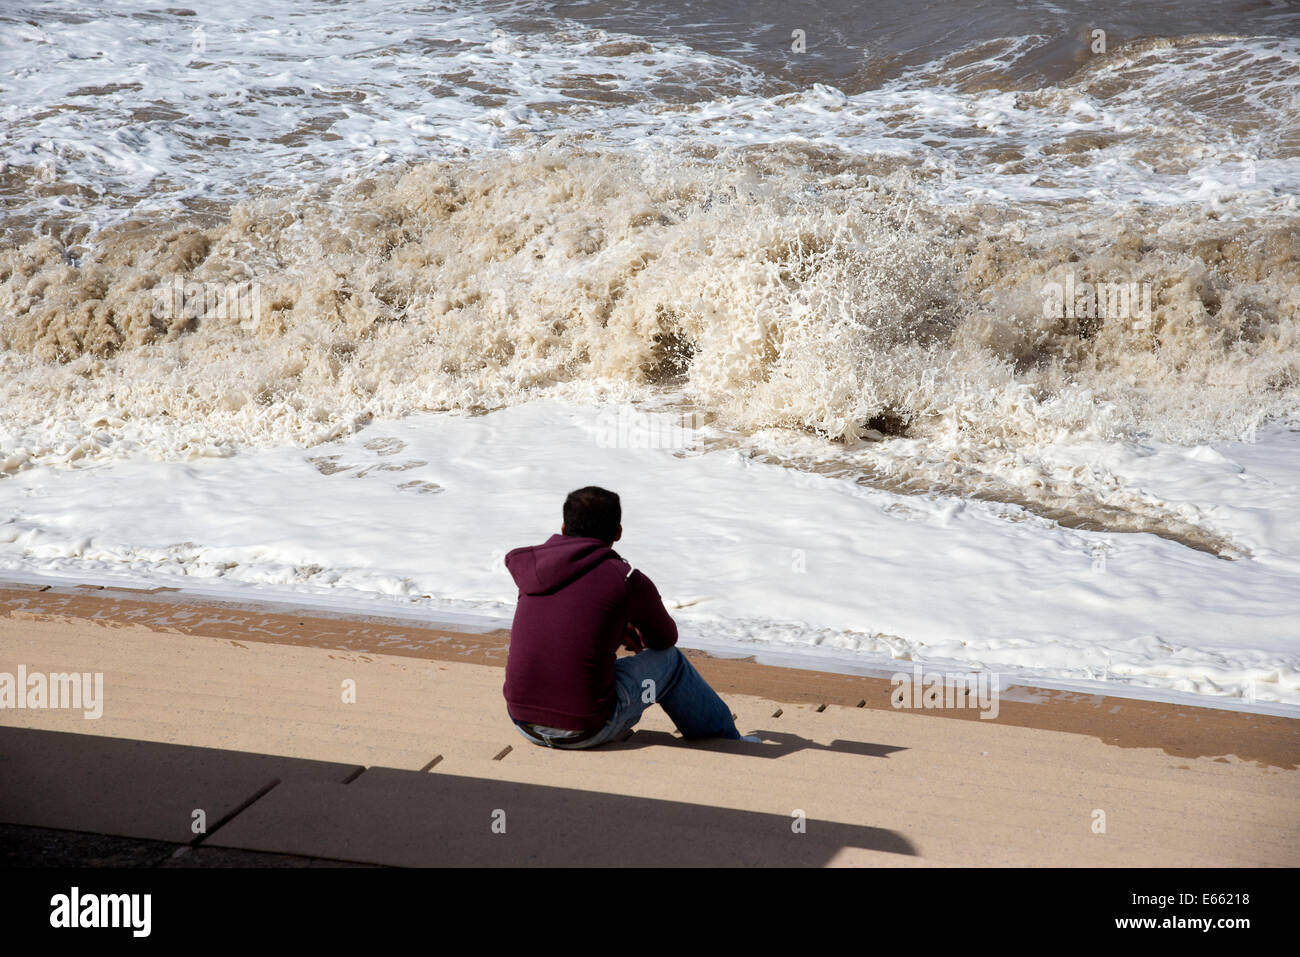 Man beobachtet eine schwere See schlagen die Blackpool Lancashire UK Küste Küste Englands Küste Stockfoto